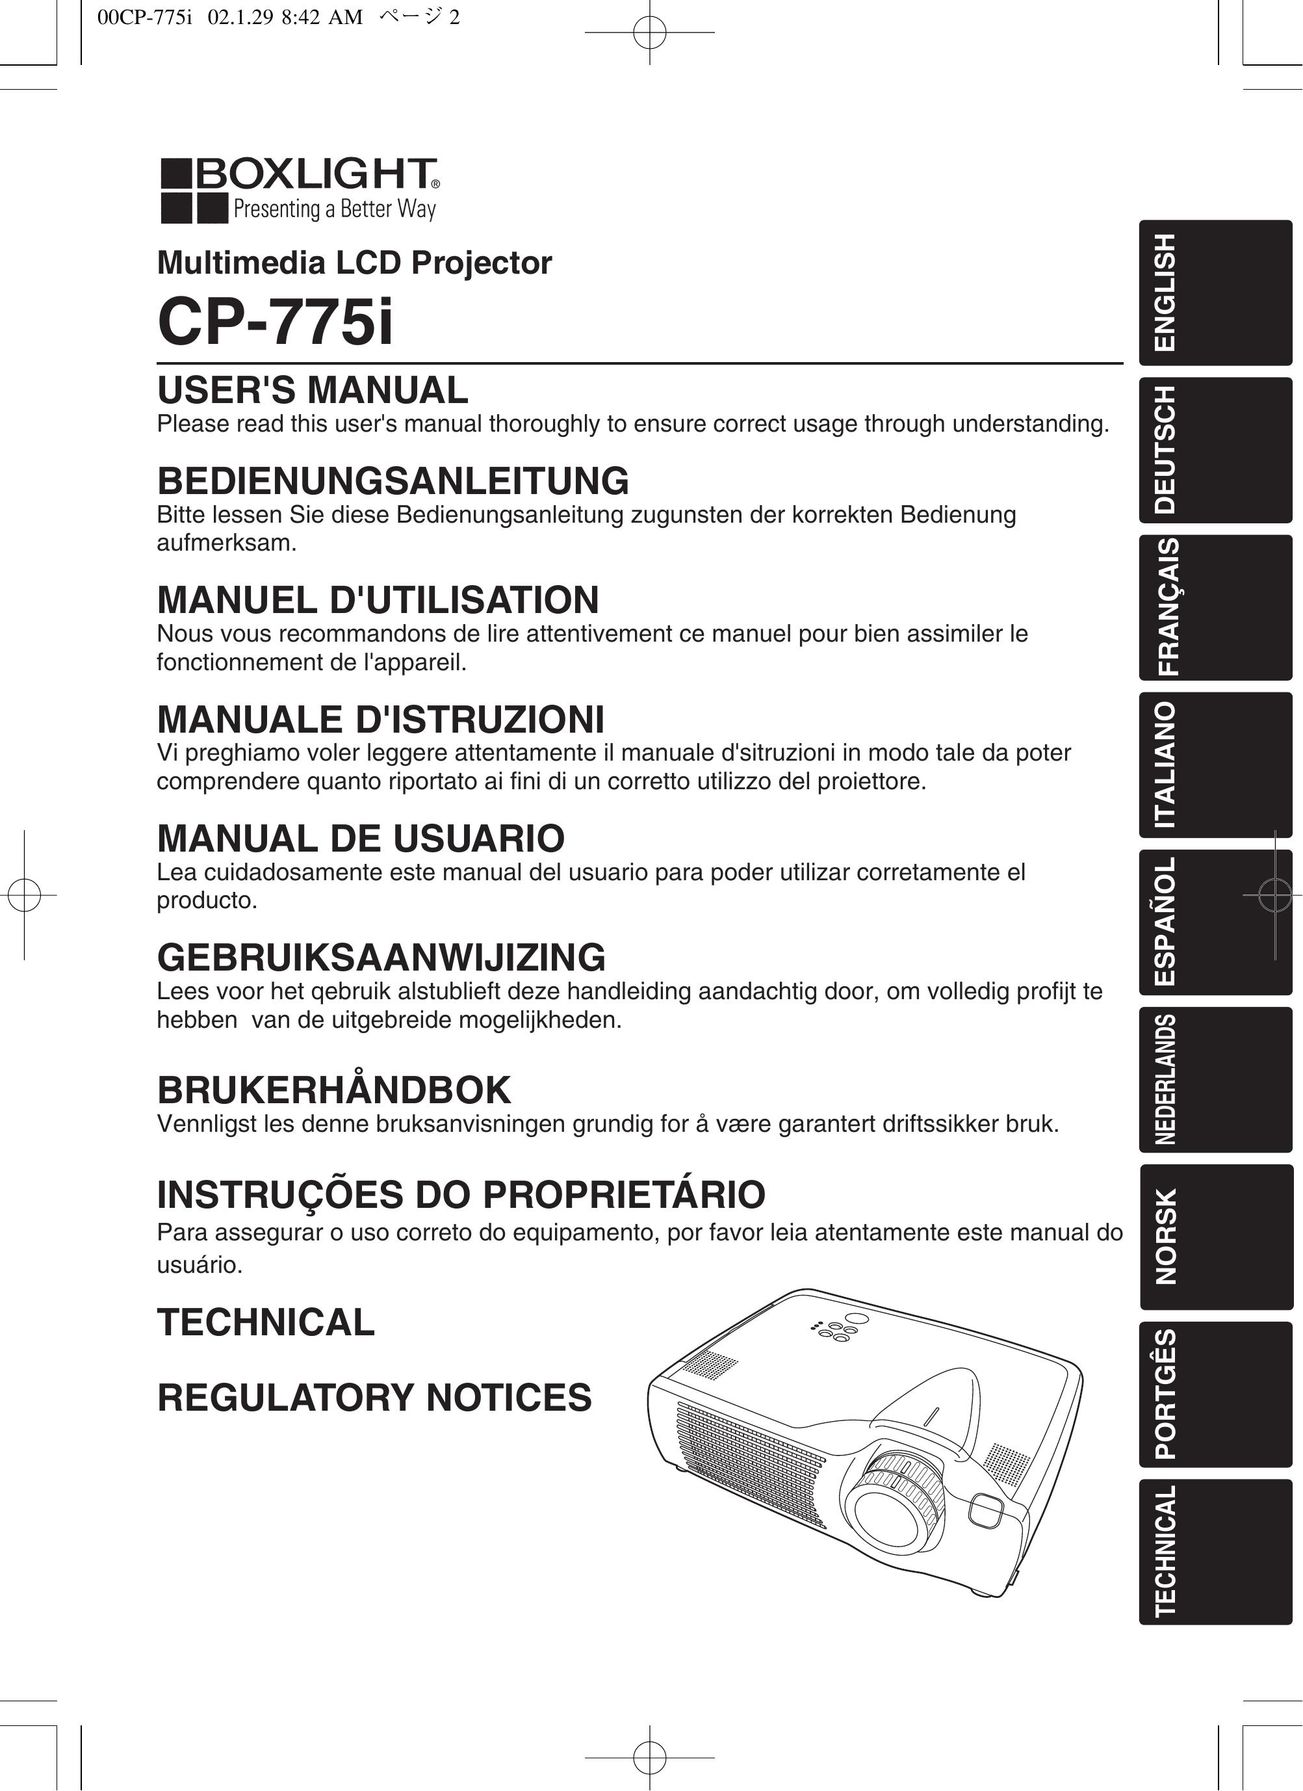 BOXLIGHT CP-775I Projector User Manual